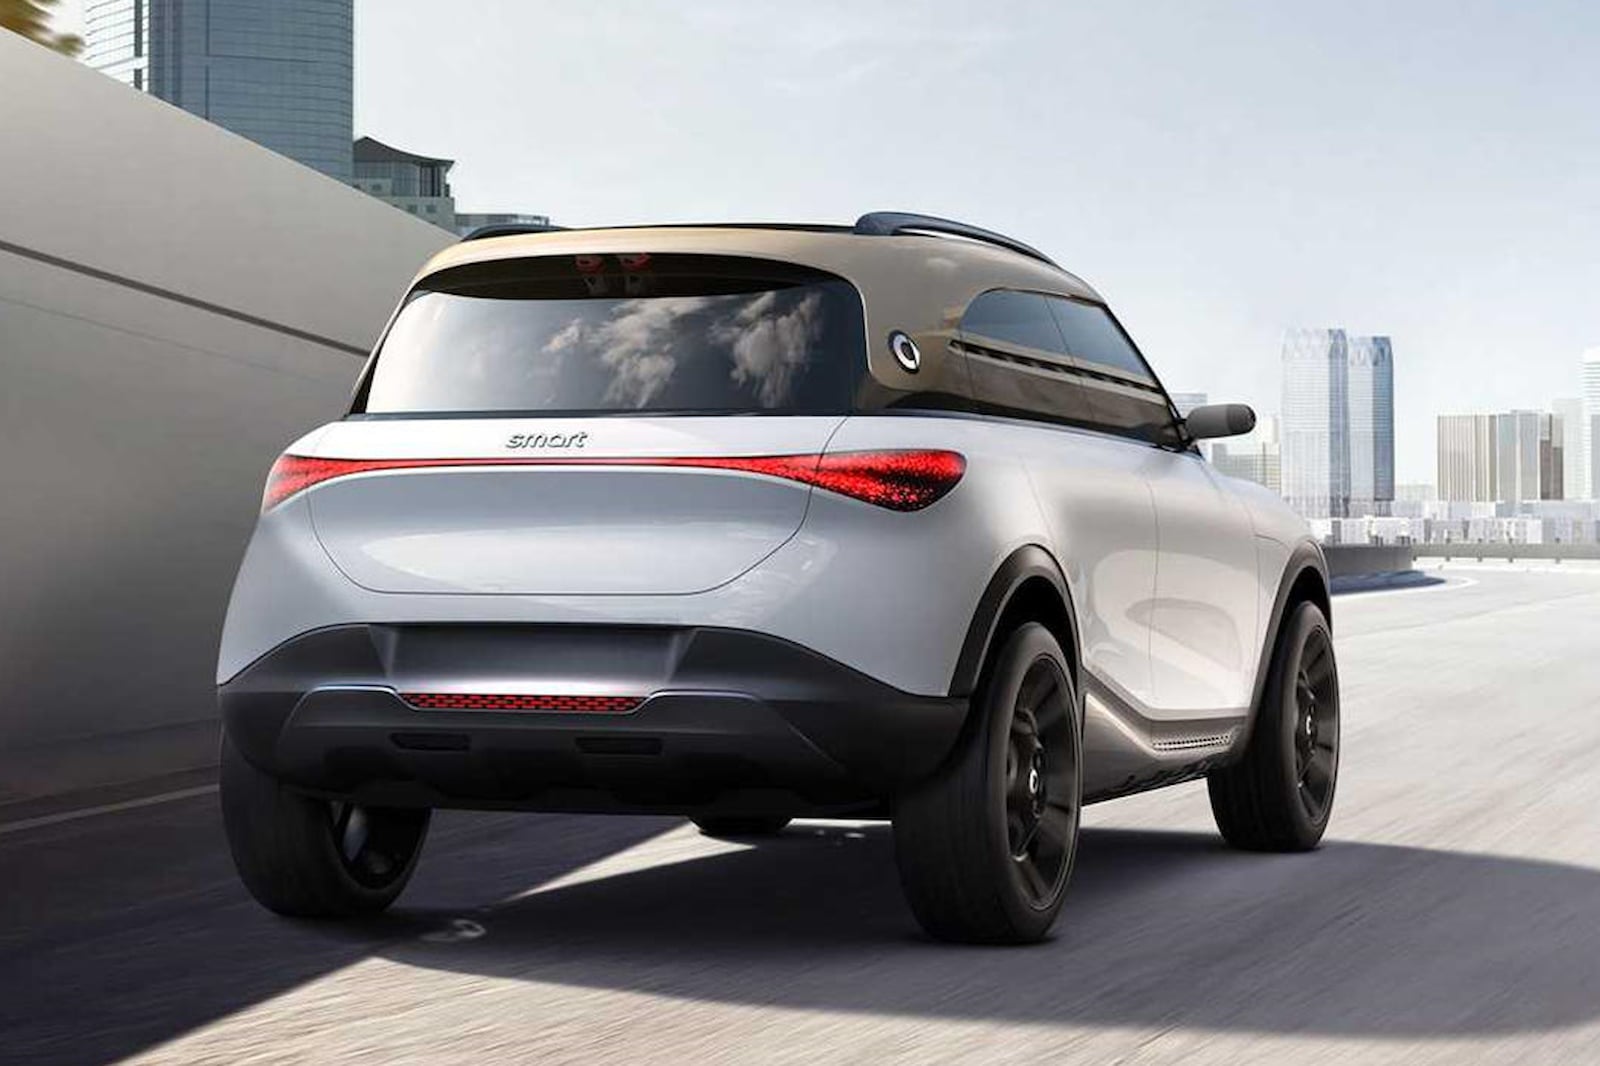 Mercedes-Benz и его китайский партнер, скорее всего, будут использовать доходы, полученные от сделки, для укрепления имиджа Smart как производителя электромобилей. В начале 2017 года бренд объявил, что он станет полностью электрическим в США, а всего